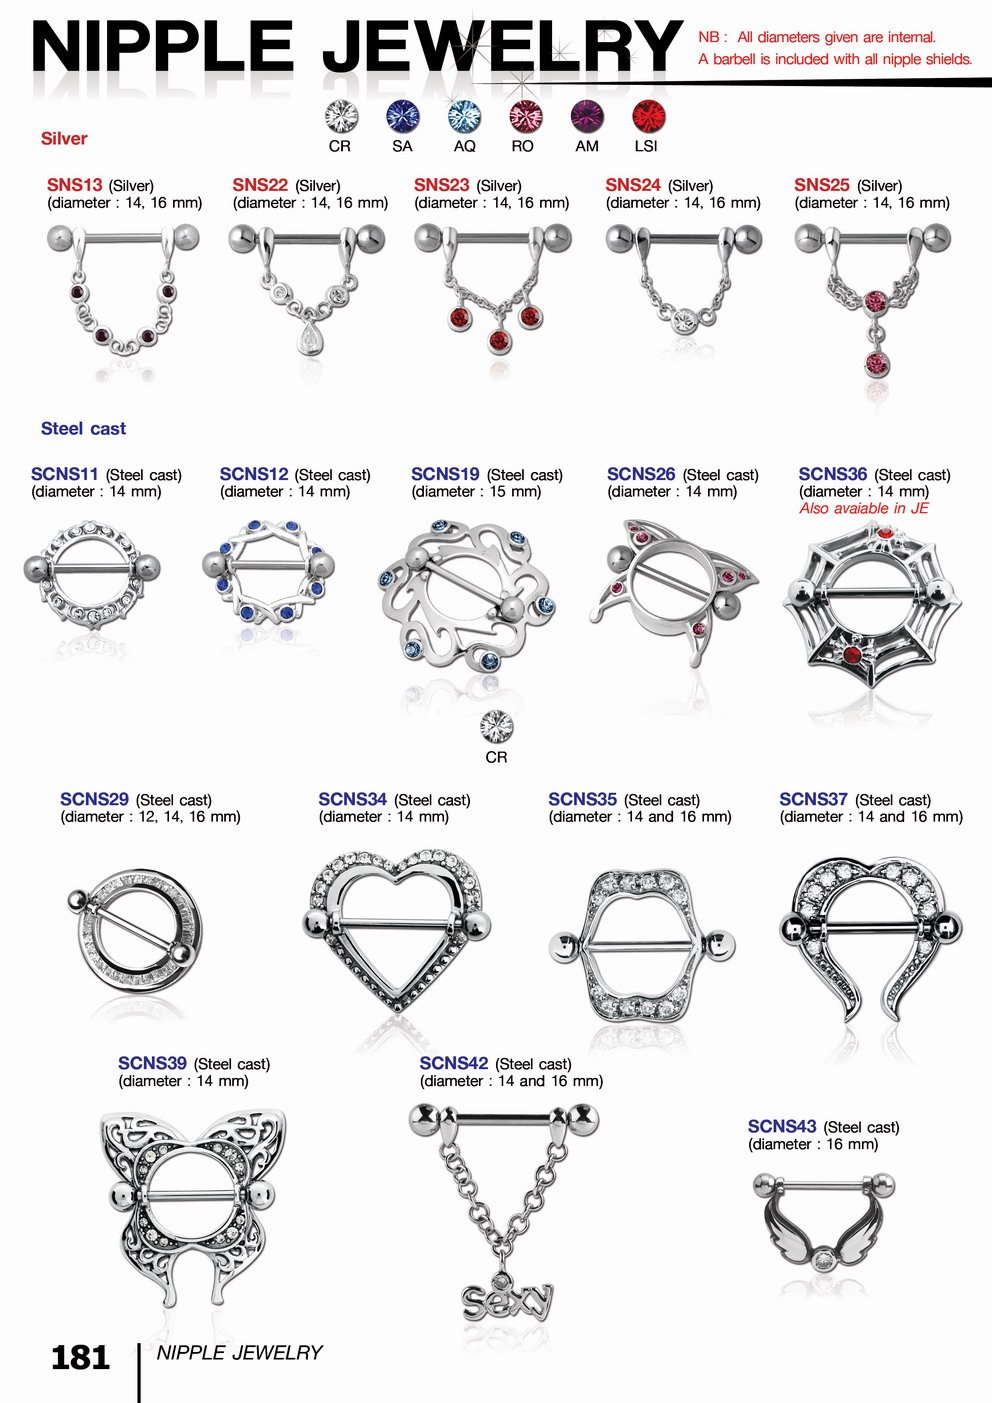 bodyjewellery2014nipplejewellery.jpg